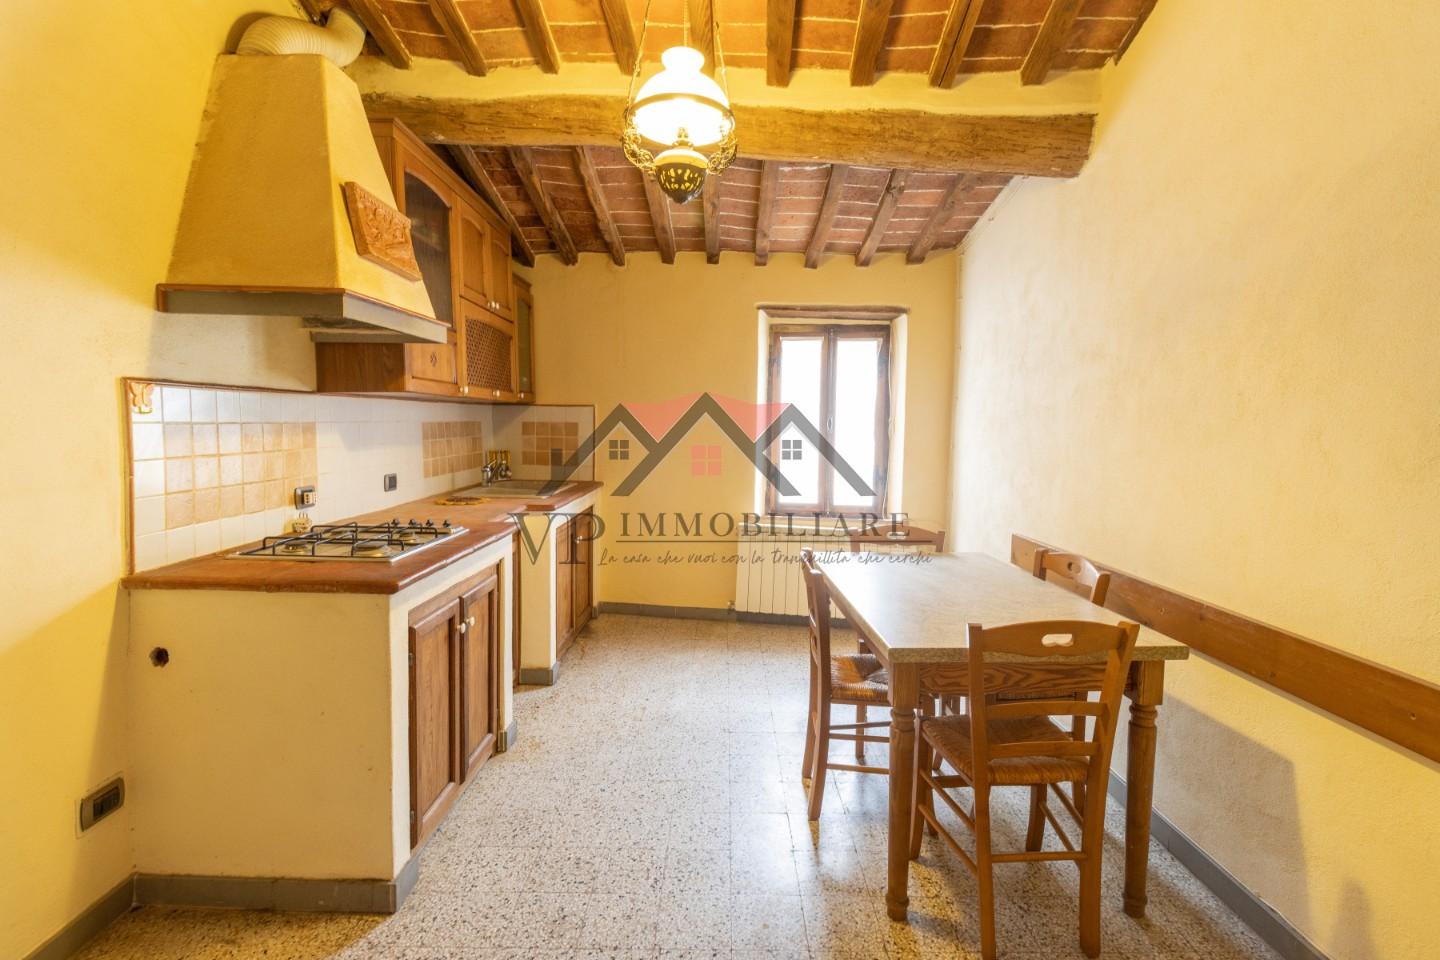 Appartamento in vendita a Monterotondo Marittimo, 3 locali, prezzo € 70.000 | PortaleAgenzieImmobiliari.it